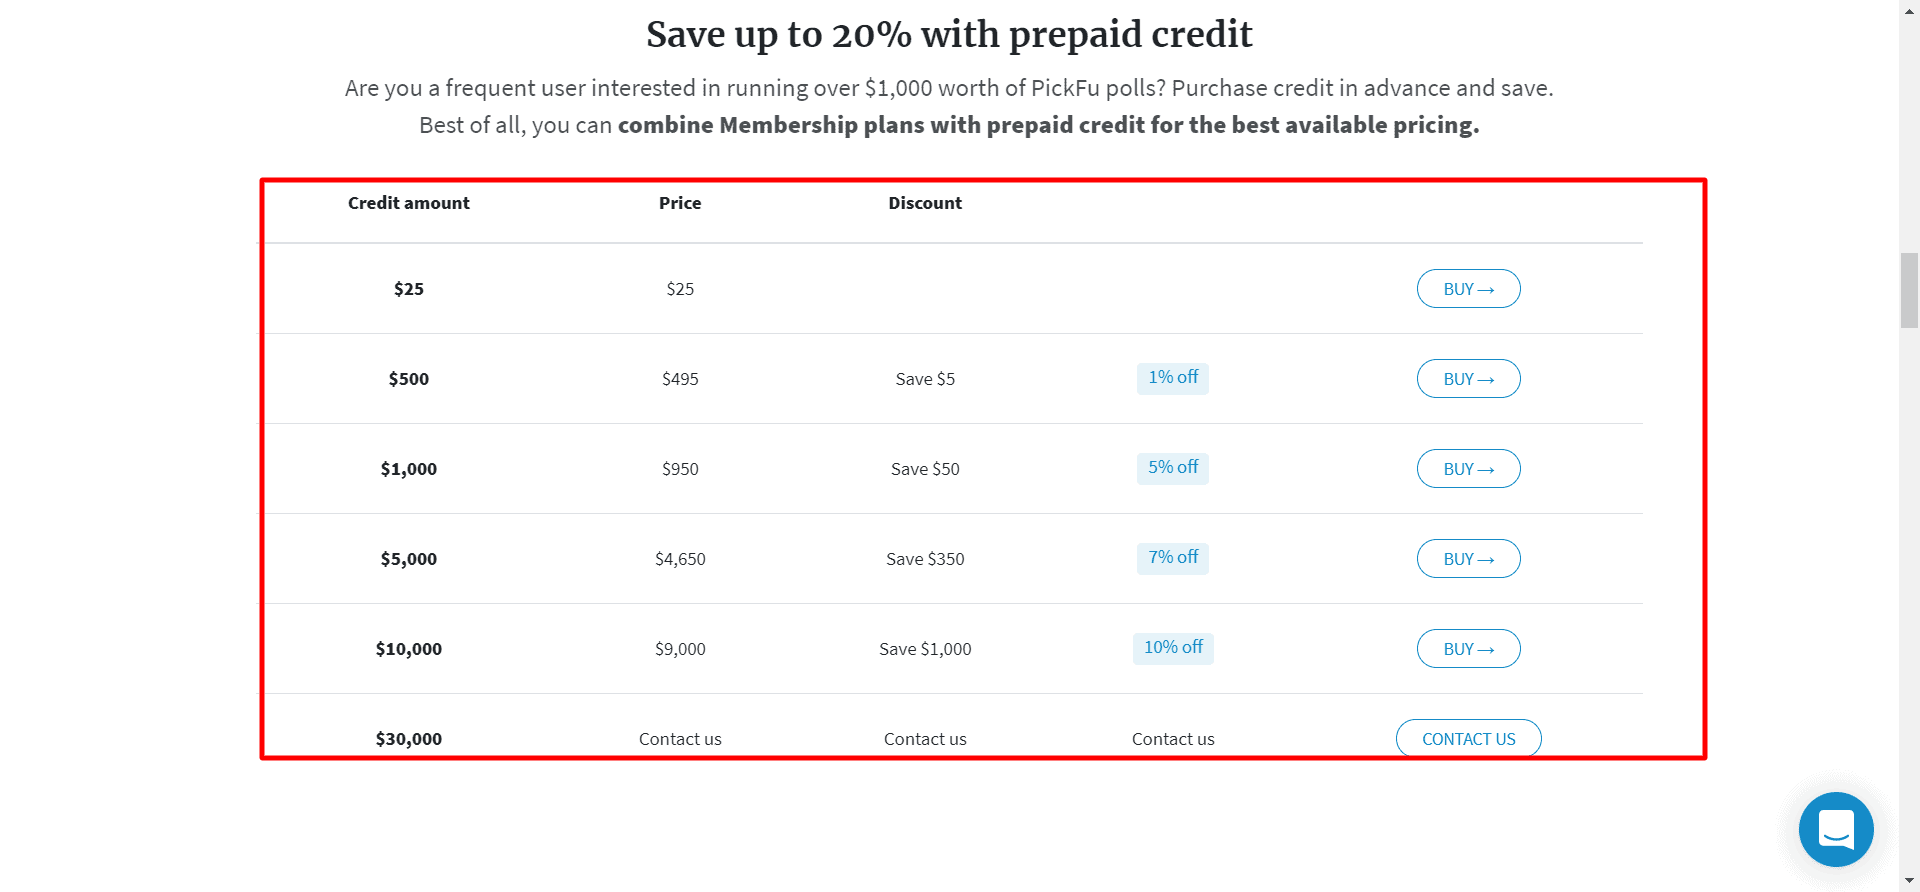 PickFu standard credit plans